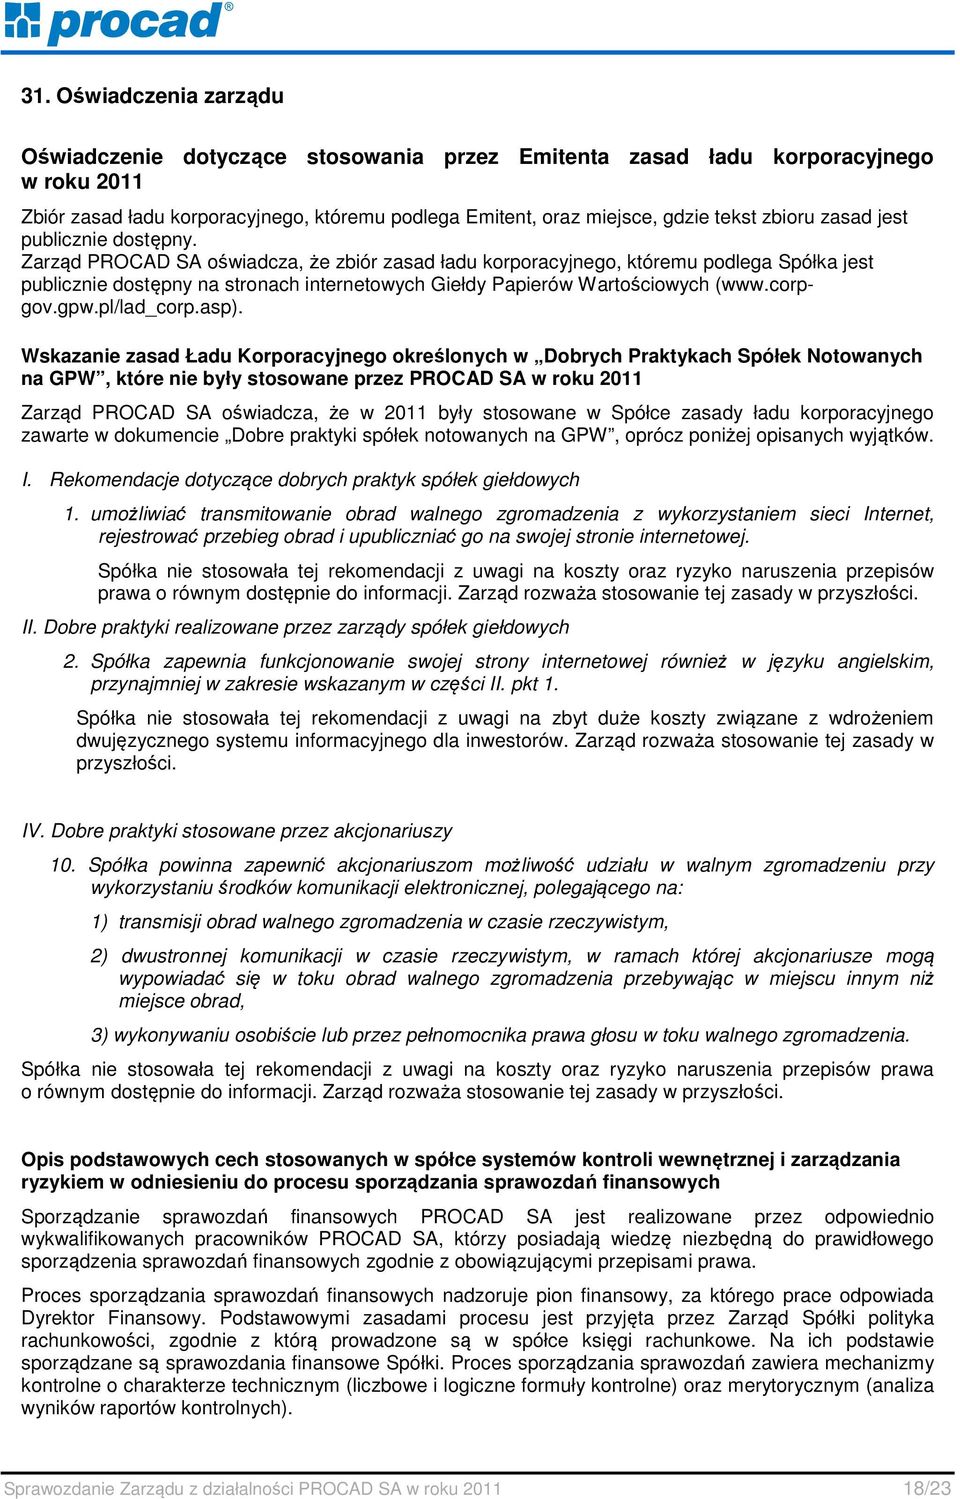 Zarząd PROCAD SA oświadcza, że zbiór zasad ładu korporacyjnego, któremu podlega Spółka jest publicznie dostępny na stronach internetowych Giełdy Papierów Wartościowych (www.corpgov.gpw.pl/lad_corp.